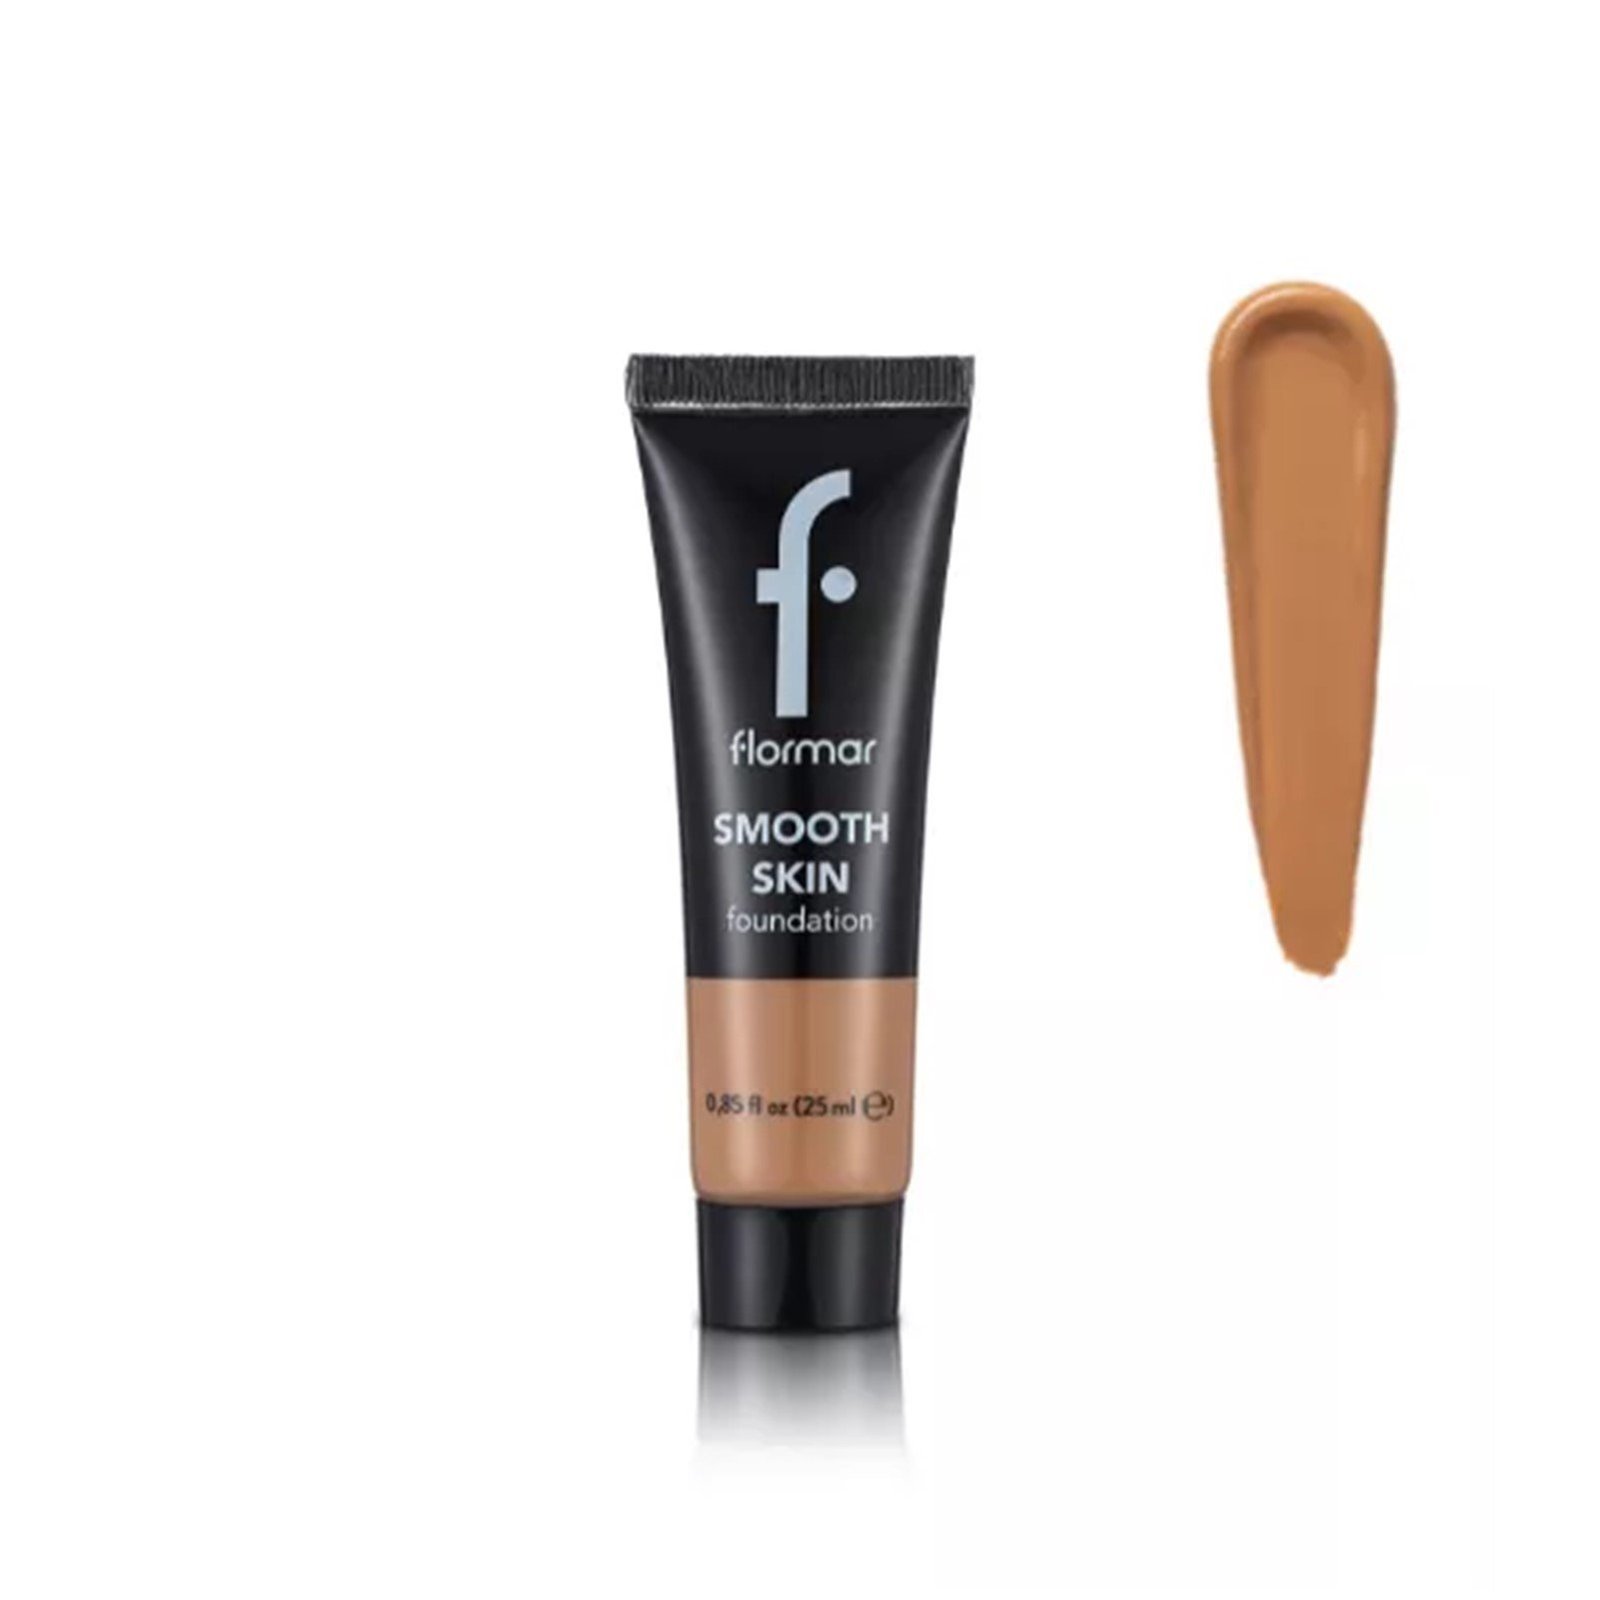 Flormar Smooth Skin Foundation 006 Honey 25ml (0.85 fl oz)